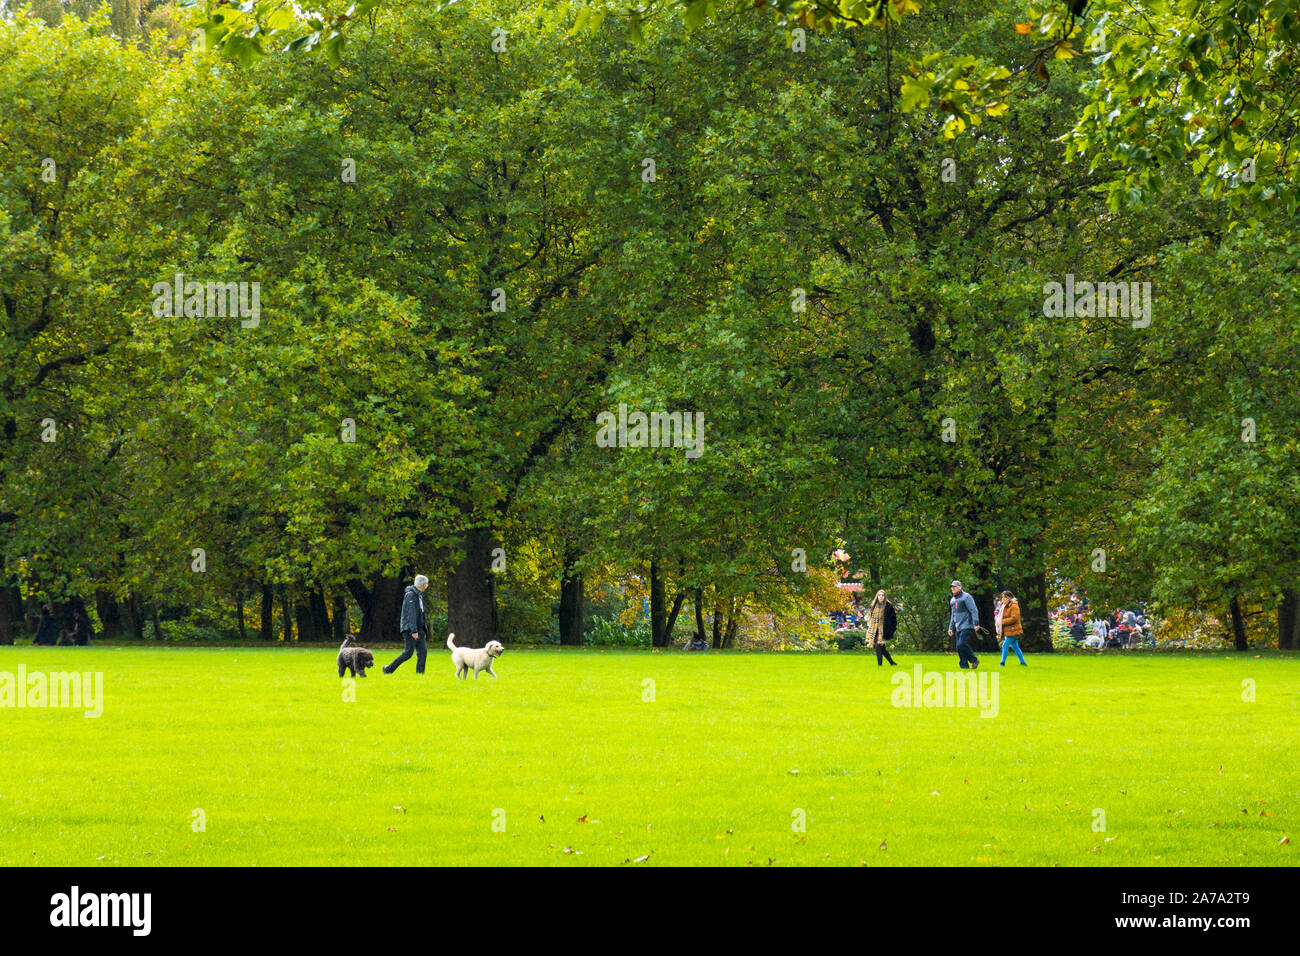 Sefton Park, les gens marcher les chiens, Liverpool, Angleterre, Royaume-Uni Banque D'Images